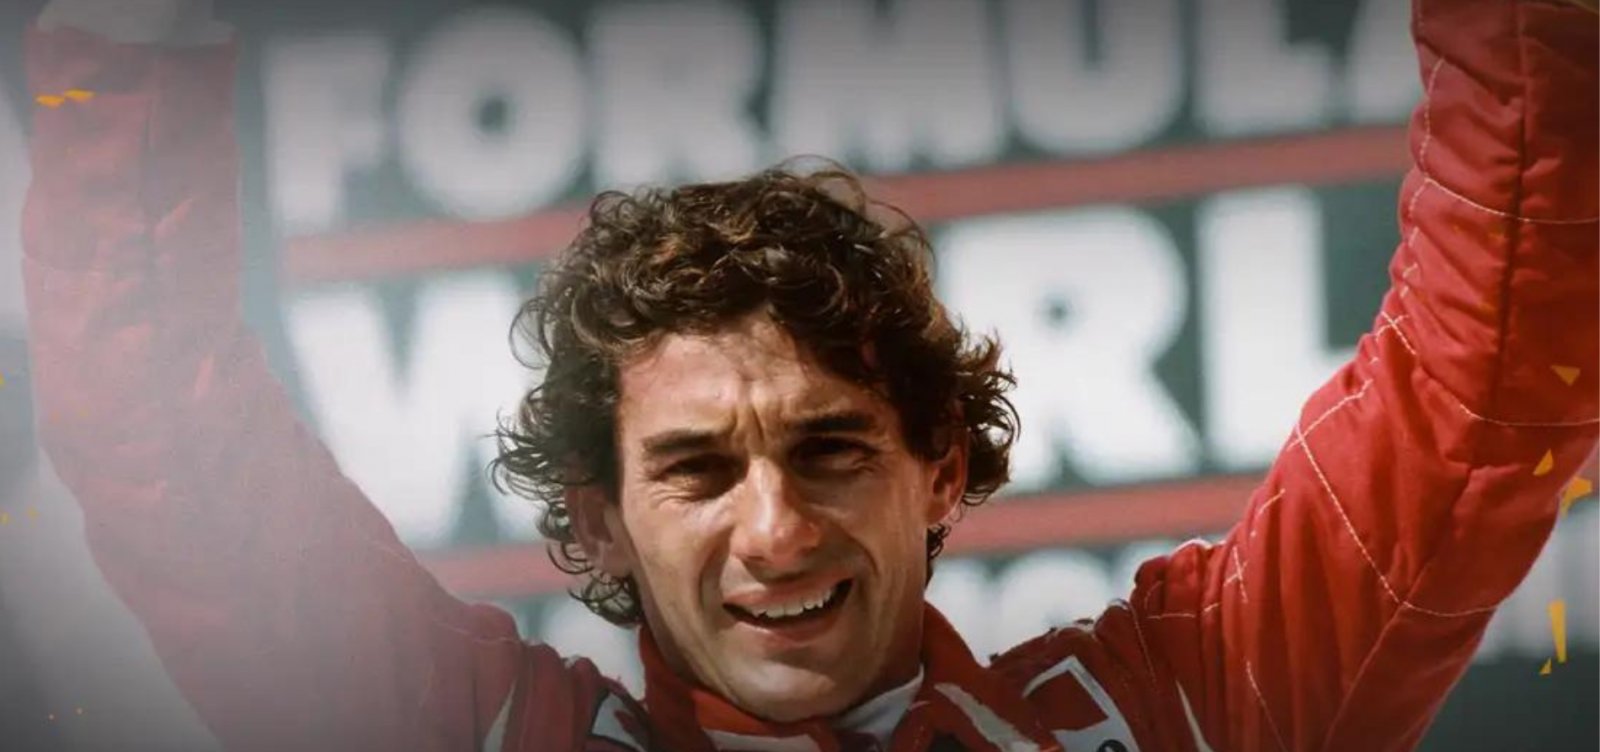 O adeus a um ídolo: morte de Ayrton Senna completa 30 anos